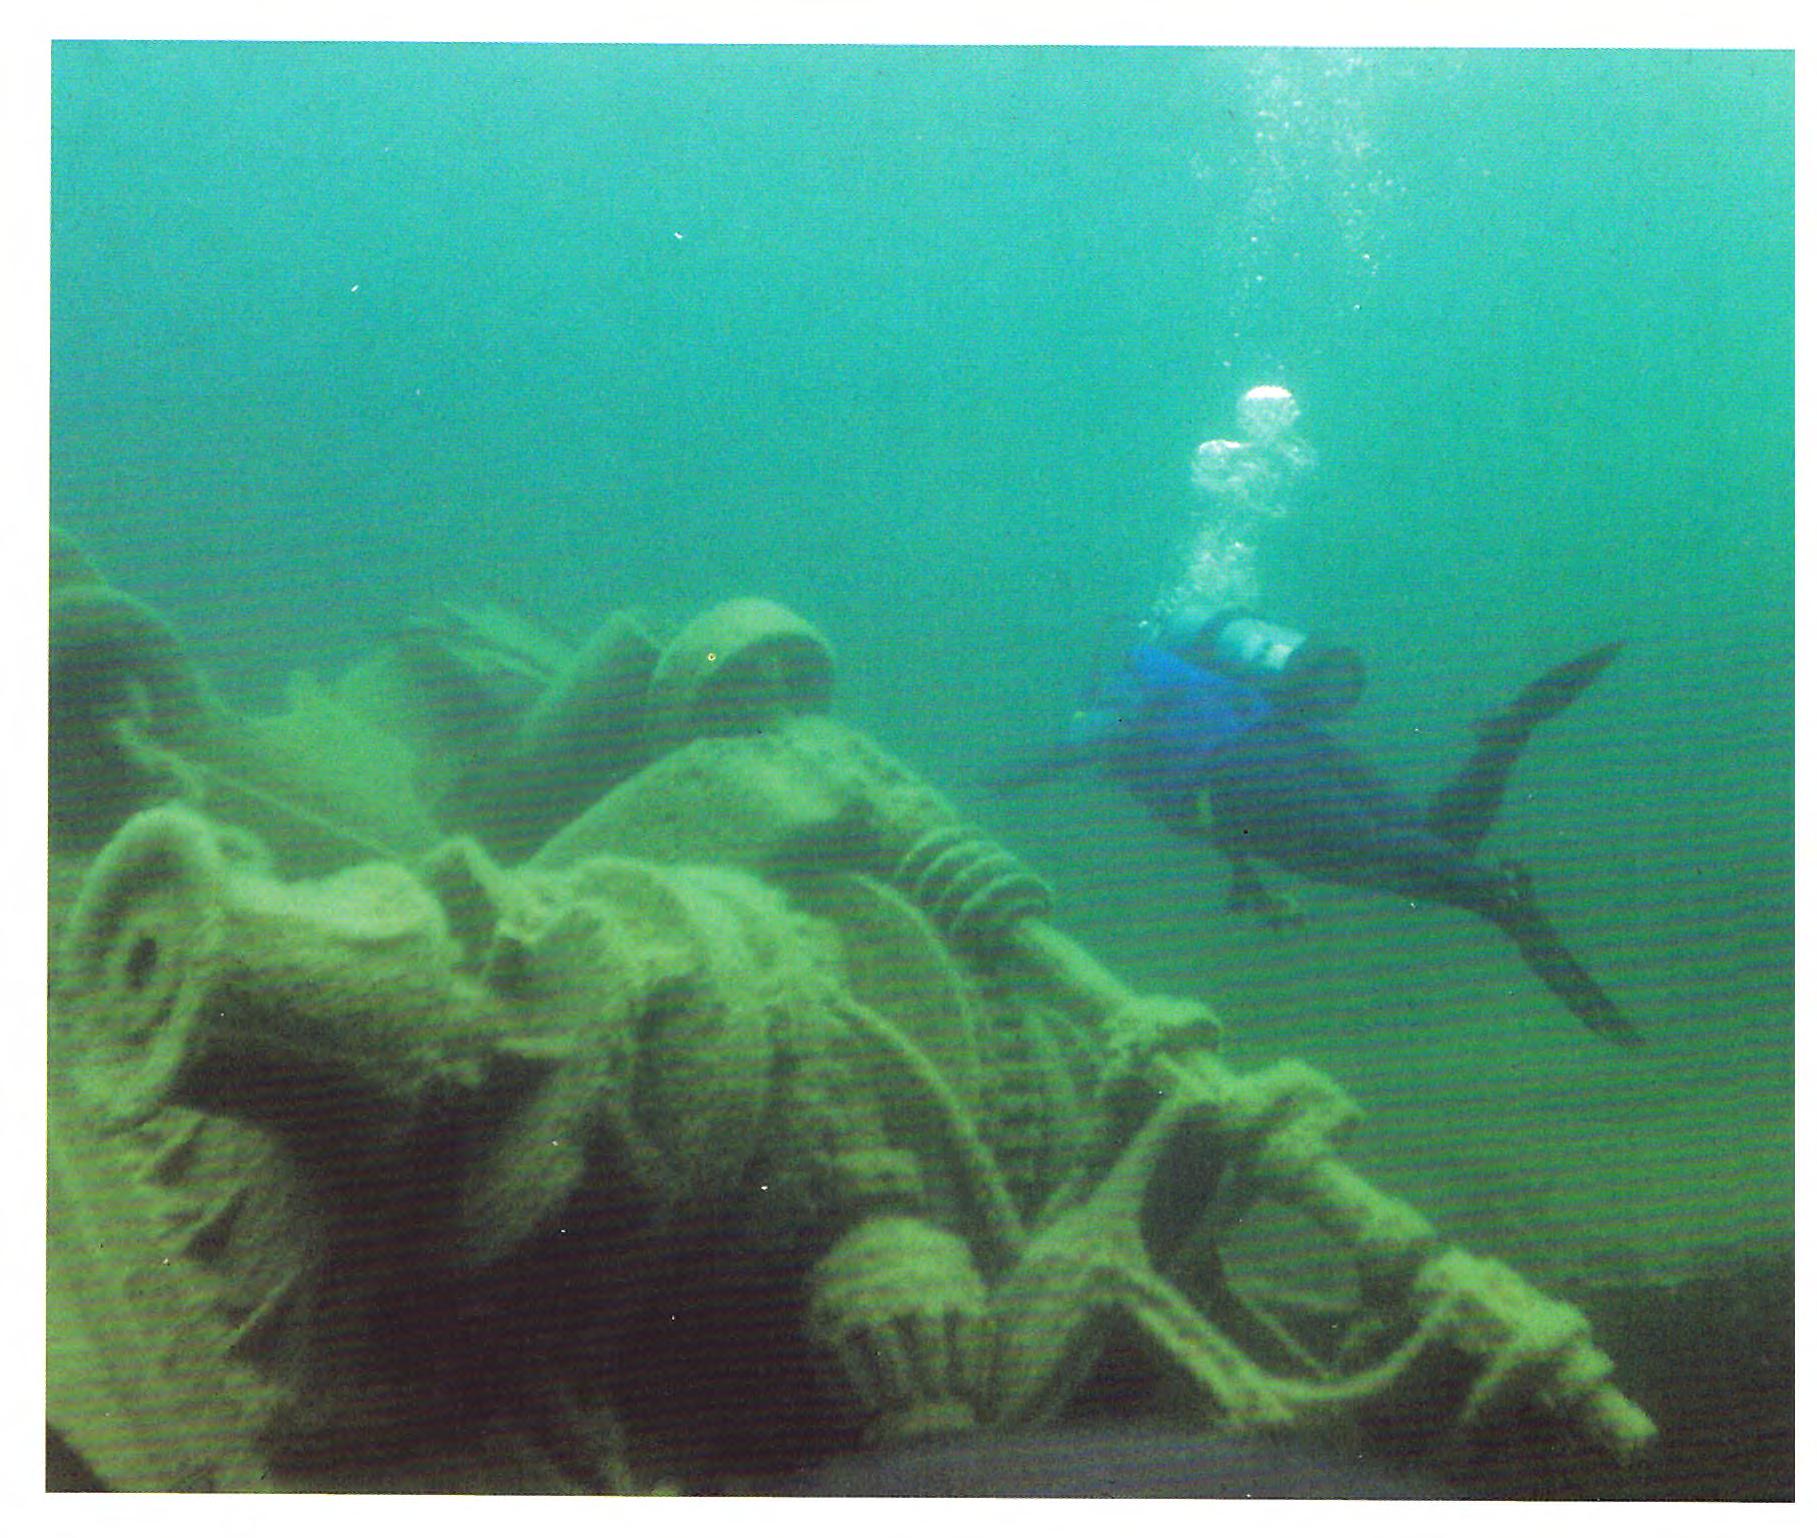 Glenlyon A - Shipwrecks of Lake Superior